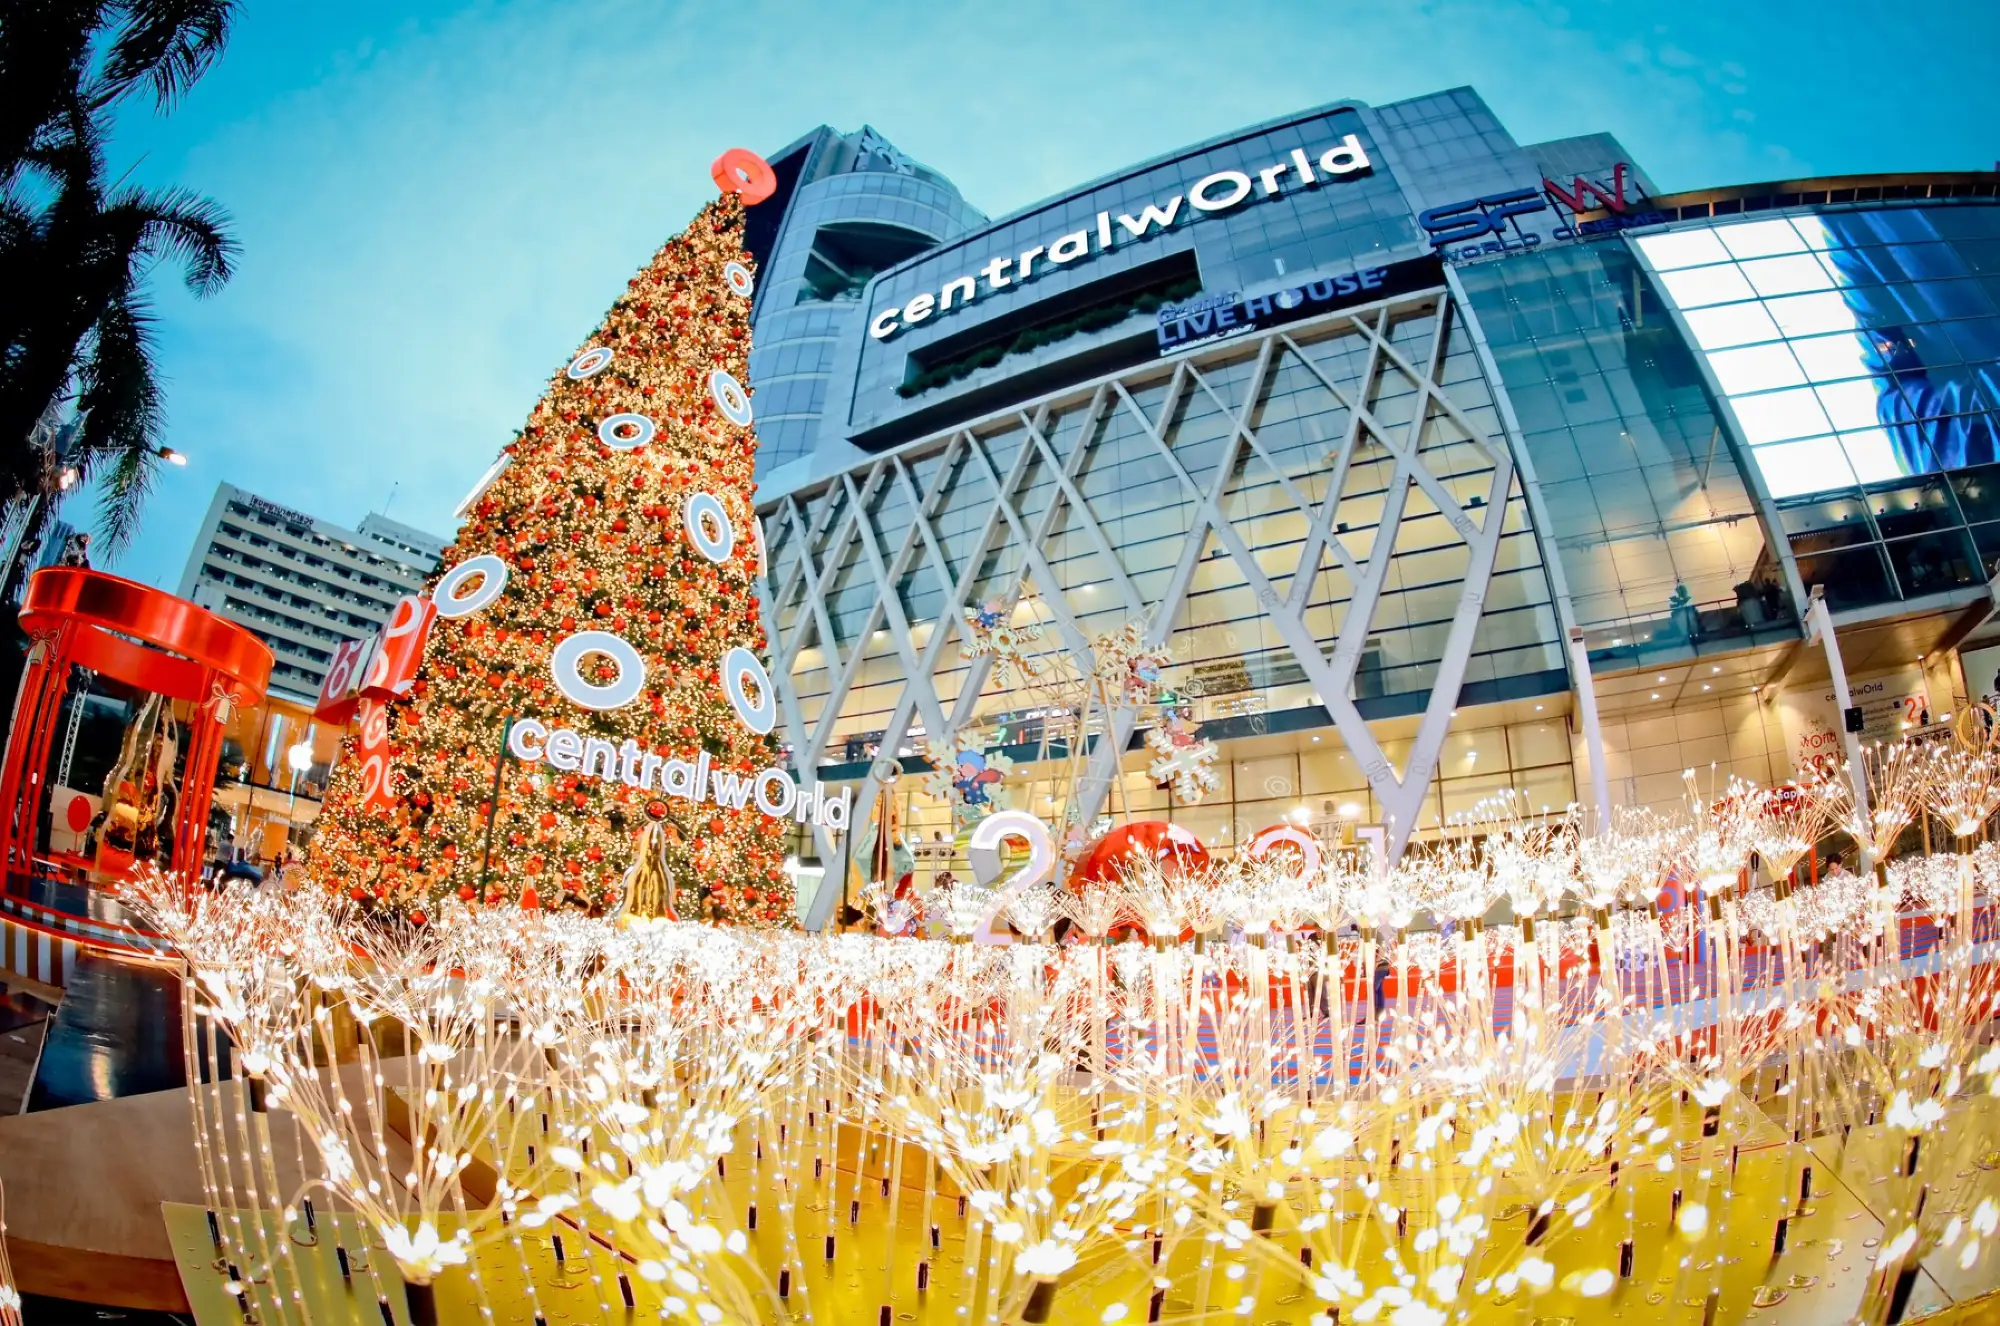 曼谷centralwOrld聖誕節佈景採用數十萬個蒲公英燈光作為點亮幸福之光（圖片來源：centralwOrld官方粉專）